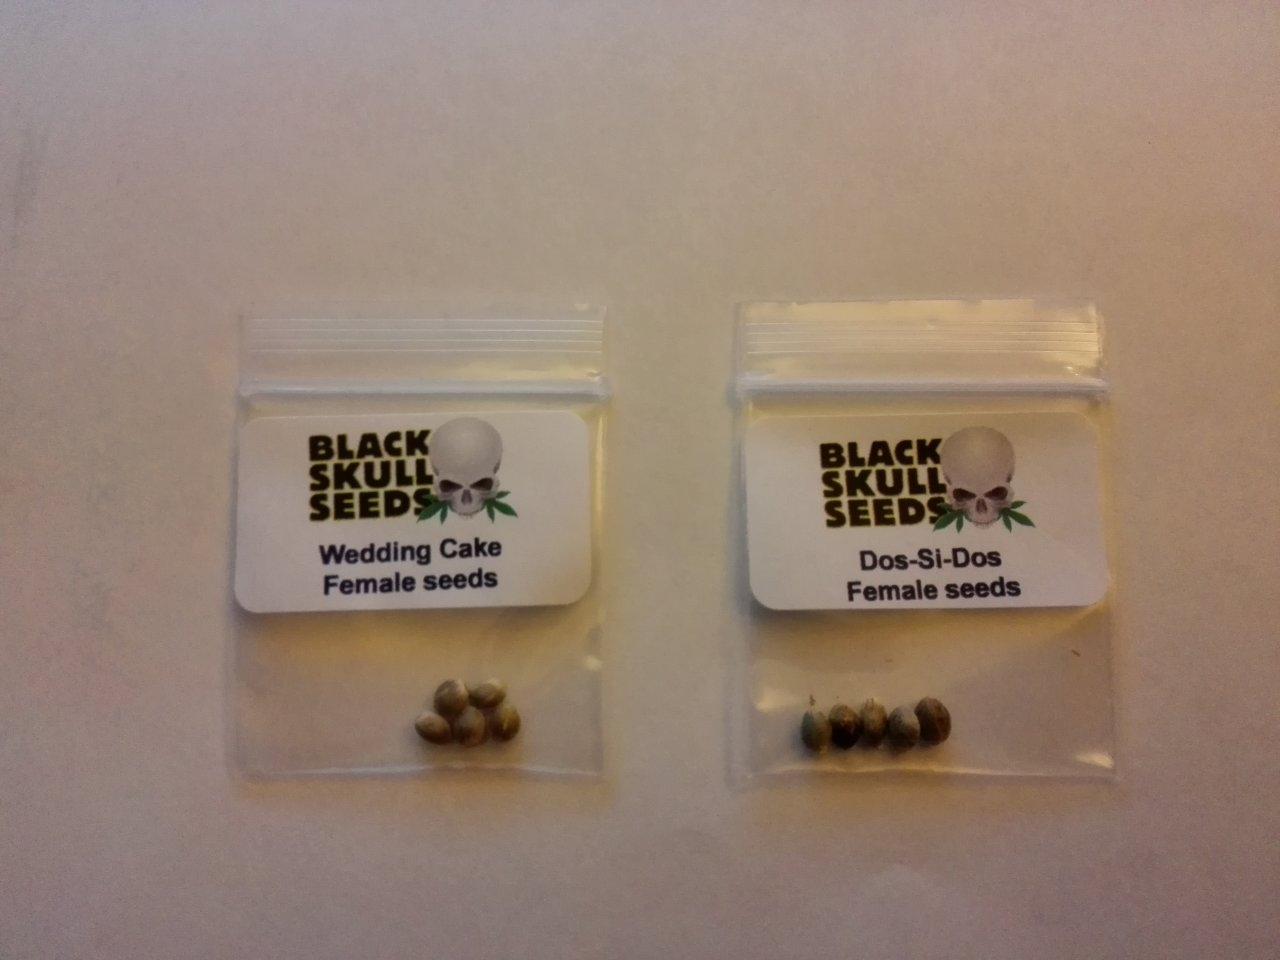 Dope Seeds delivers "Black Skull" seeds